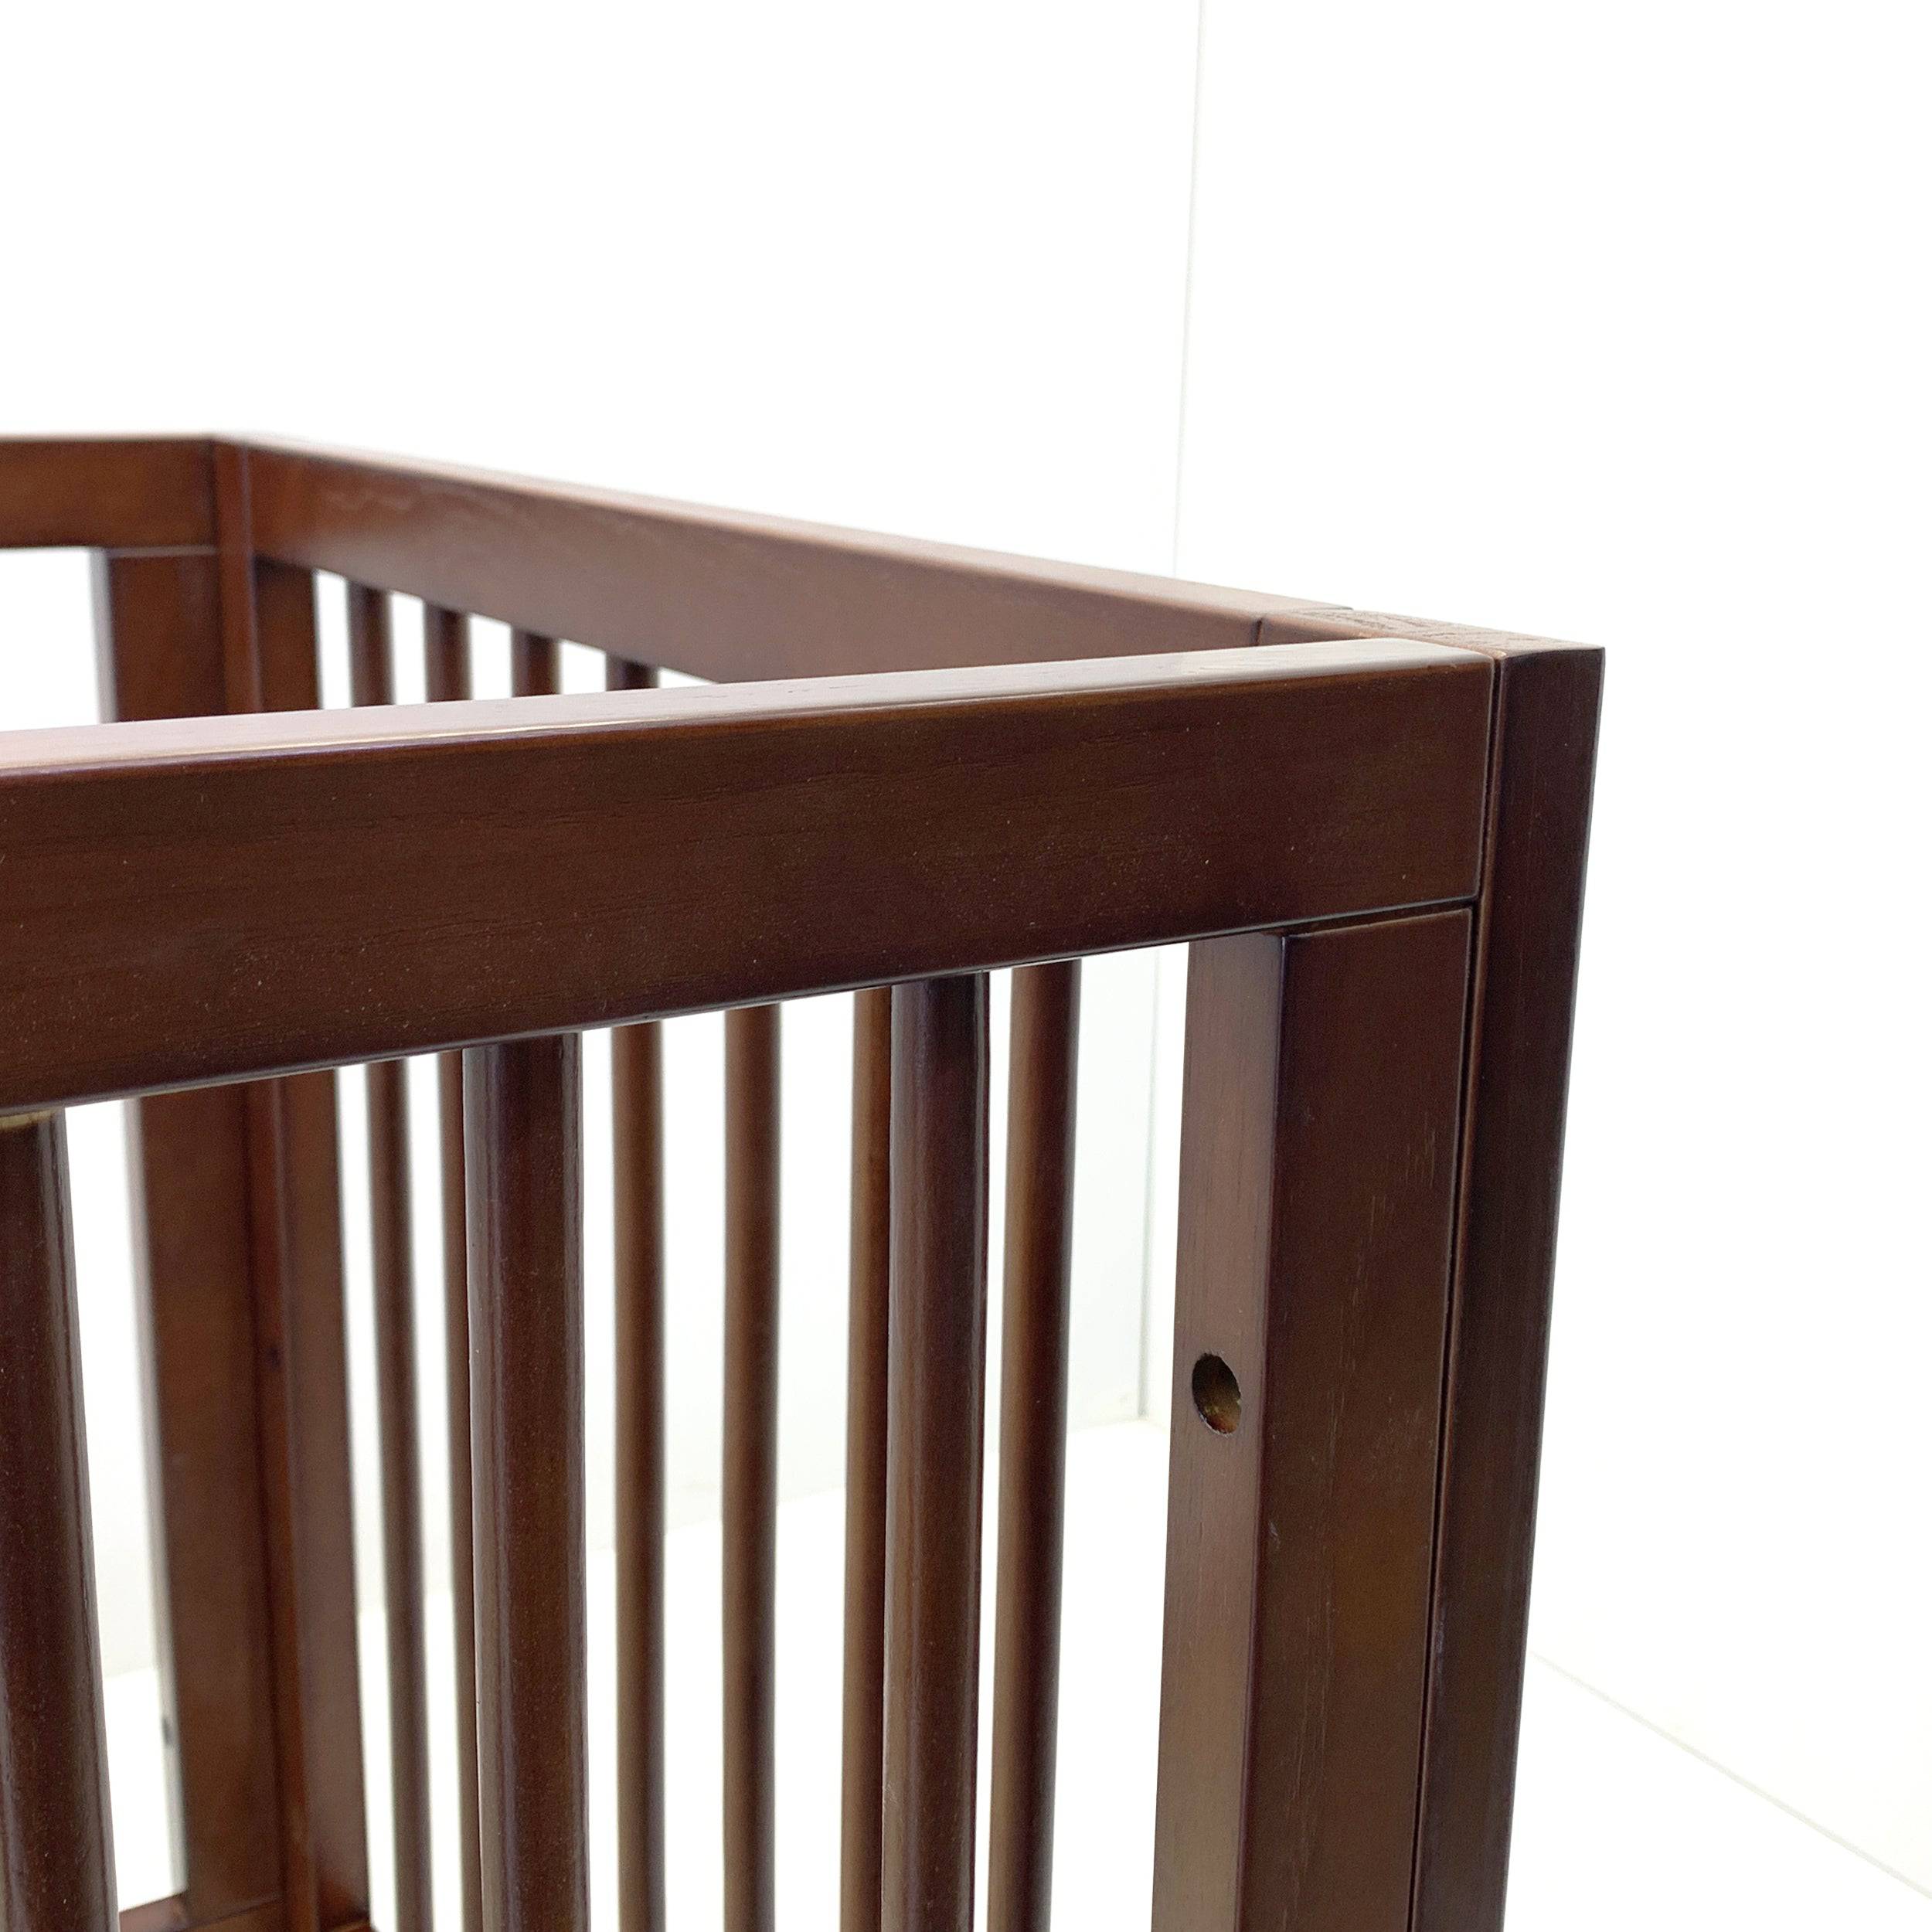 Baby Crib Et-Y005-W -  Cribs | سرير الطفل - ebarza Furniture UAE | Shop Modern Furniture in Abu Dhabi & Dubai - مفروشات ايبازرا في الامارات | تسوق اثاث عصري وديكورات مميزة في دبي وابوظبي